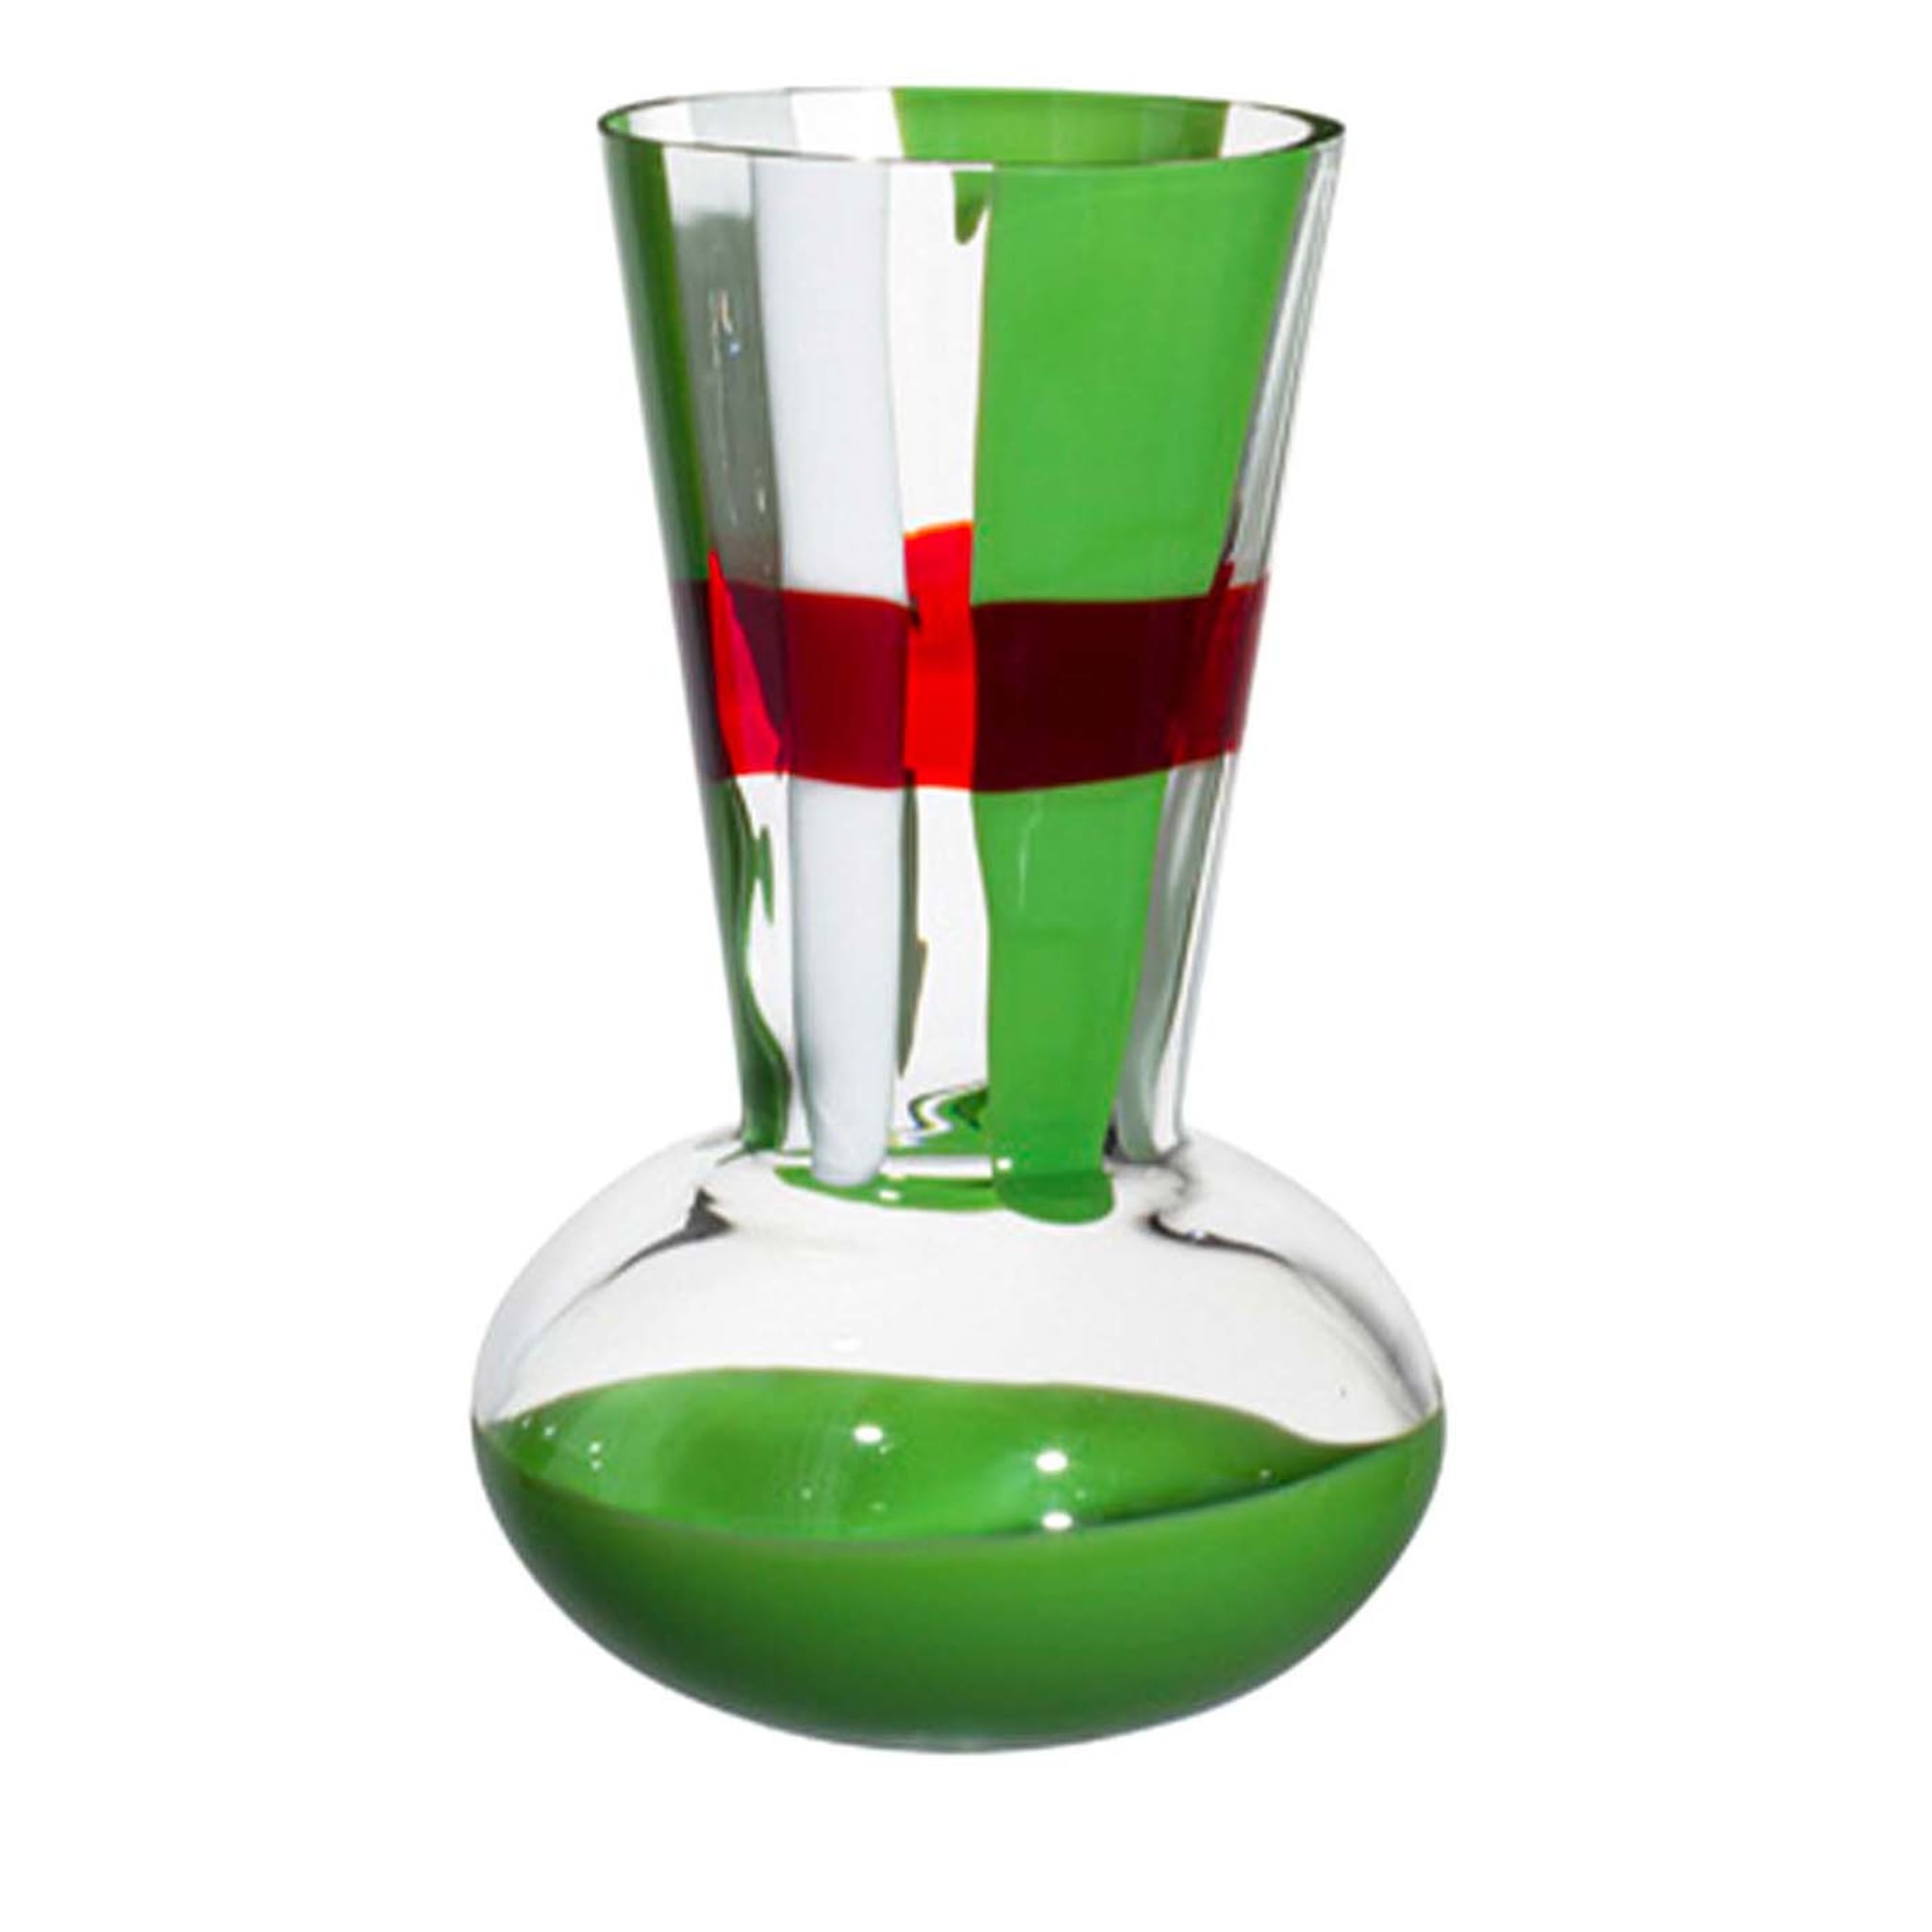 Vaso Troncosfera a strisce verdi/bianche/rosse di Carlo Moretti - Vista principale